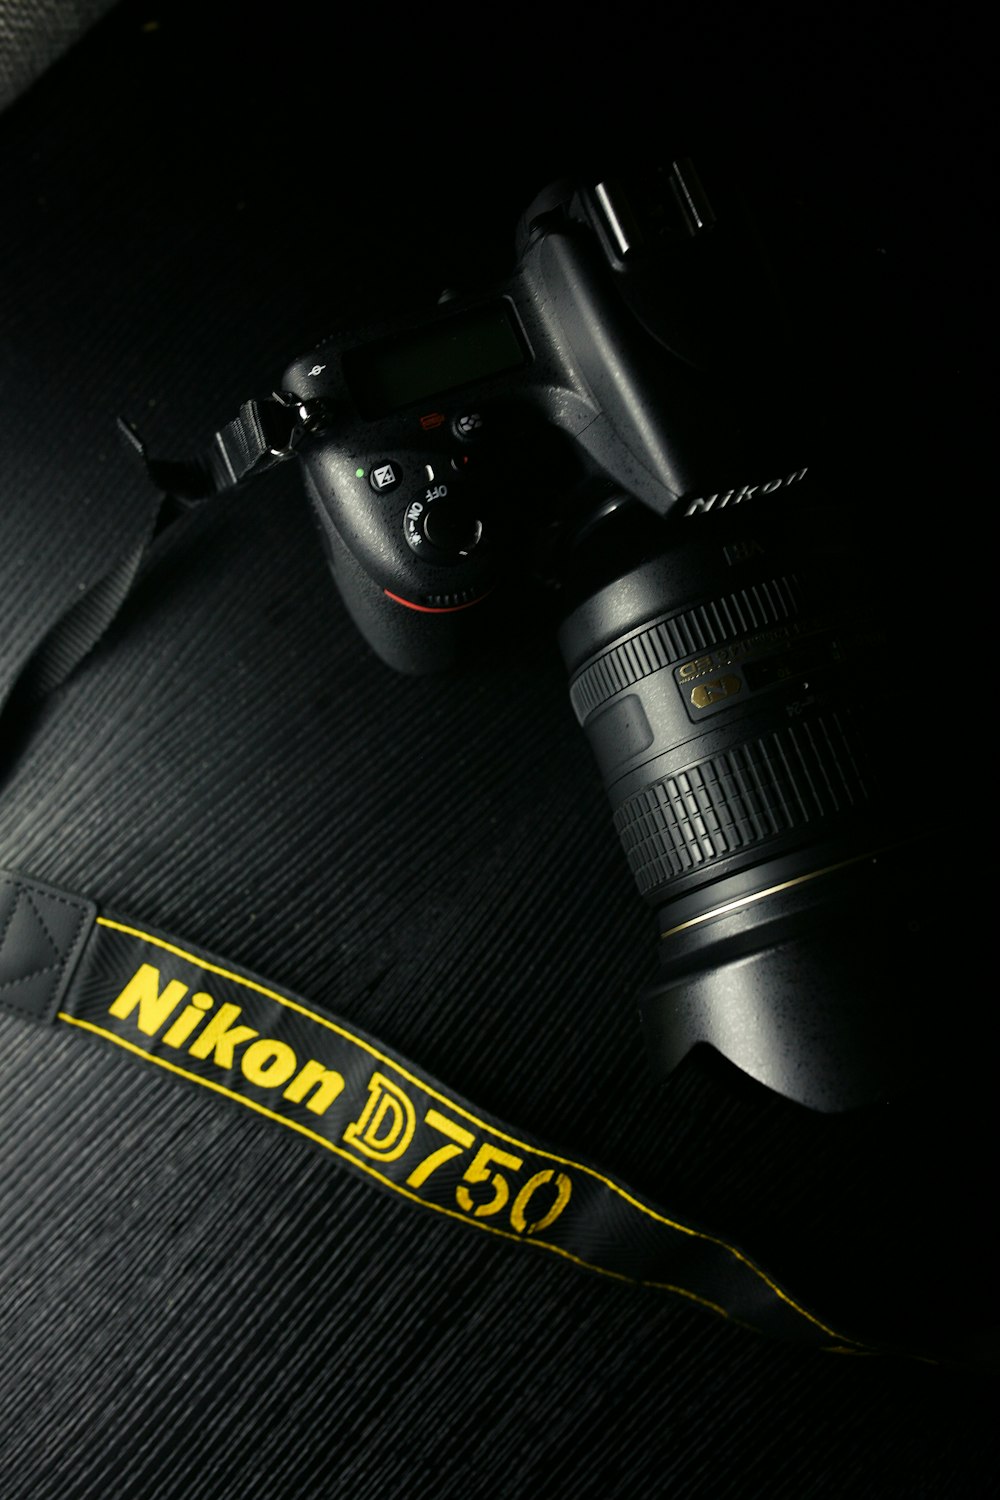 Fotocamera DSLR Nikon nera su tessuto grigio